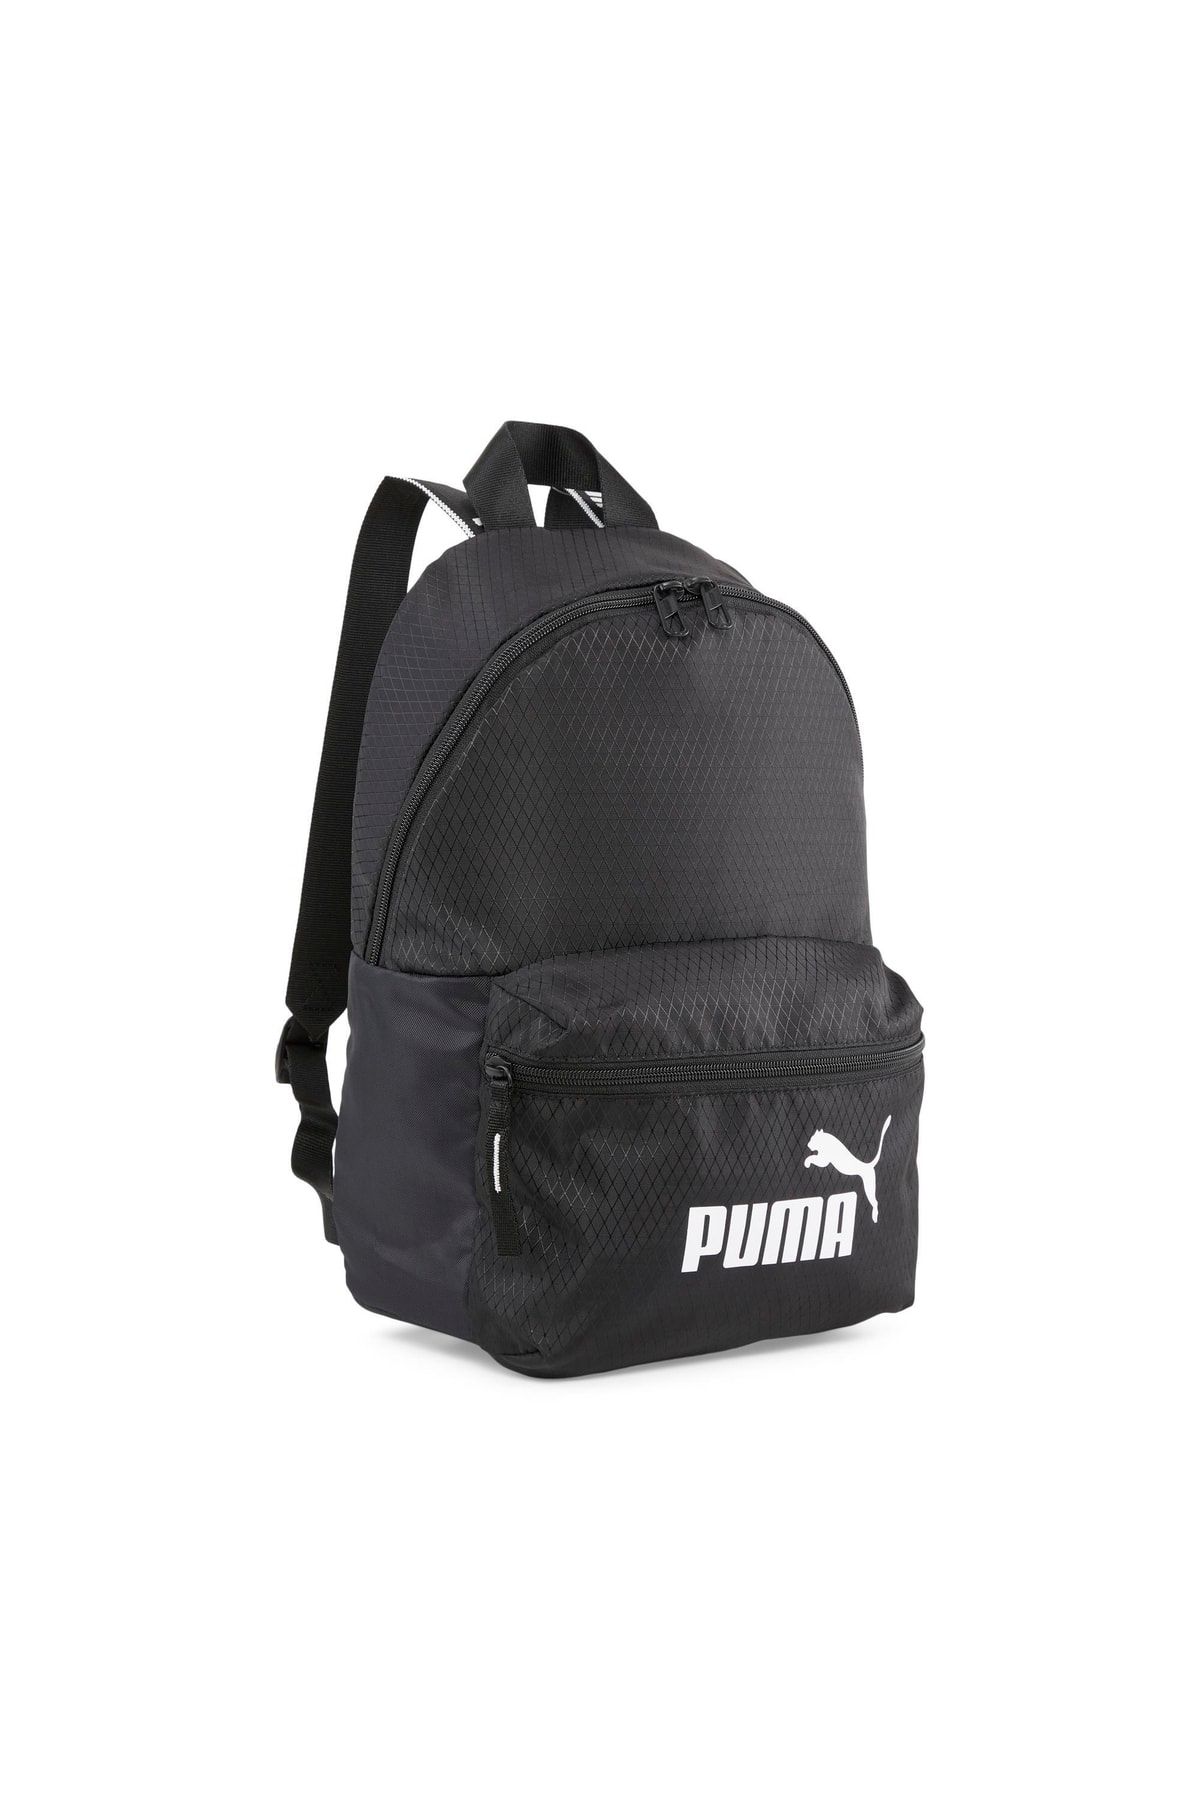 Puma Core Base Backpack PUMA Black